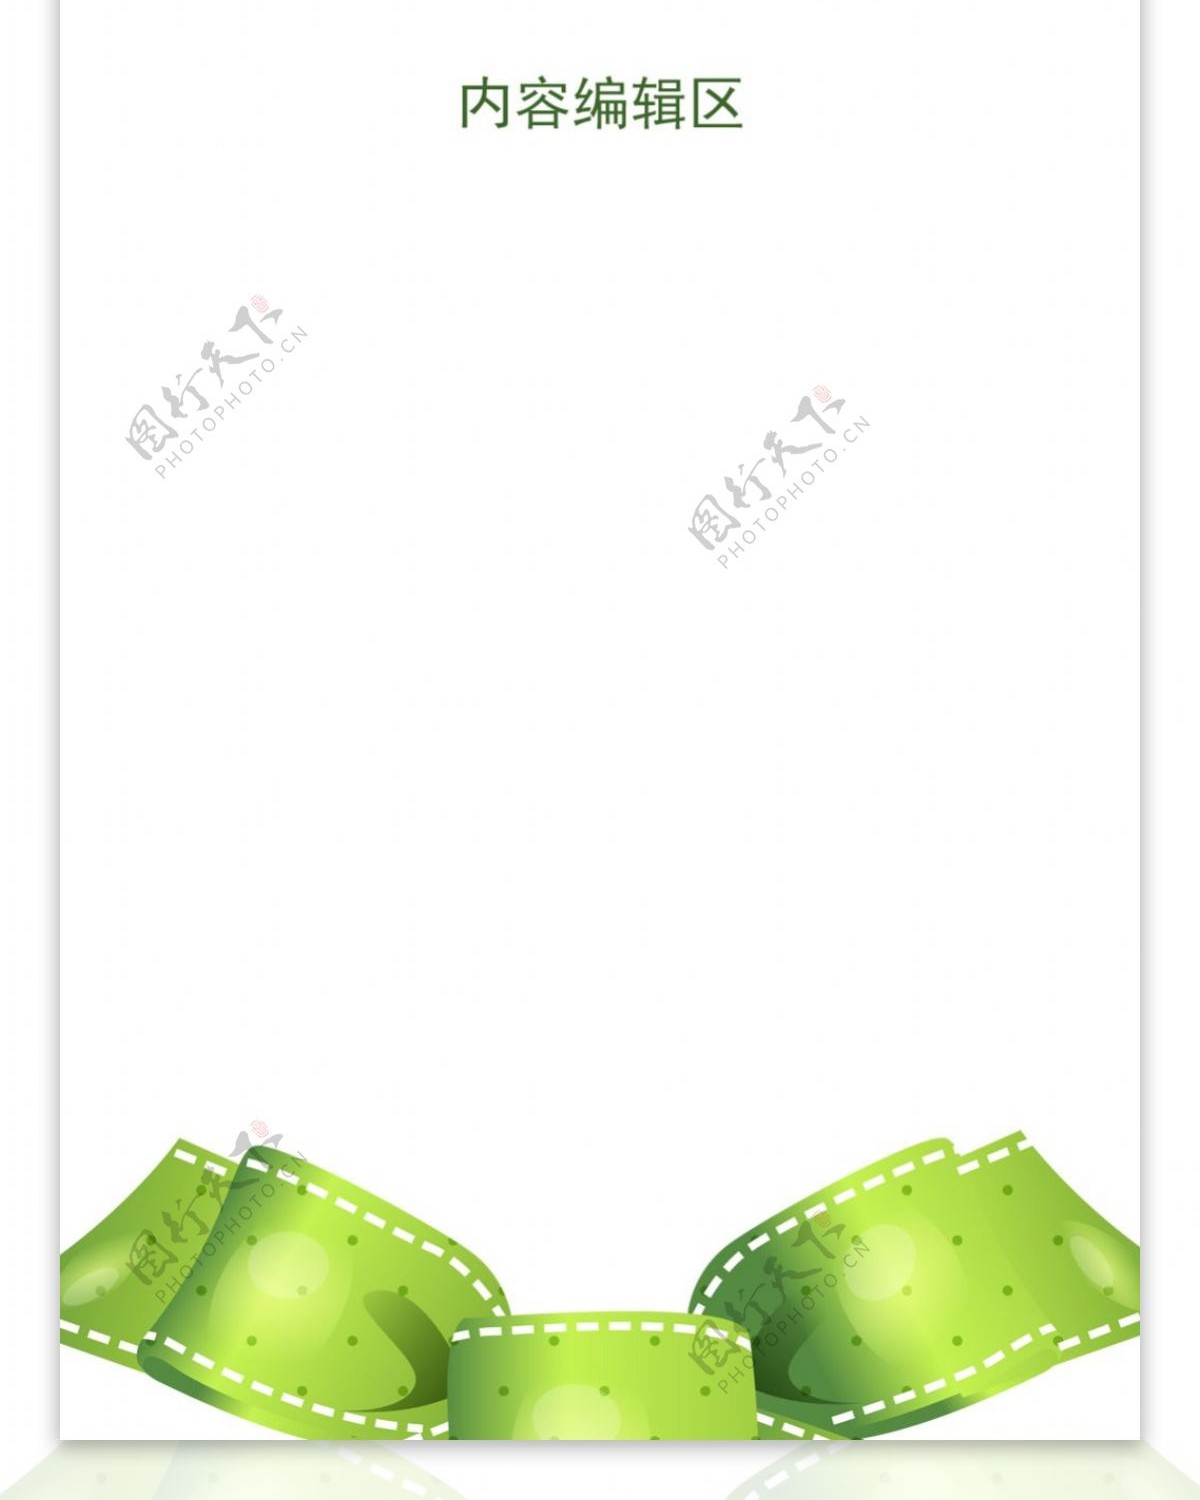 l绿色蝴蝶结展架设计模板素材海报画面